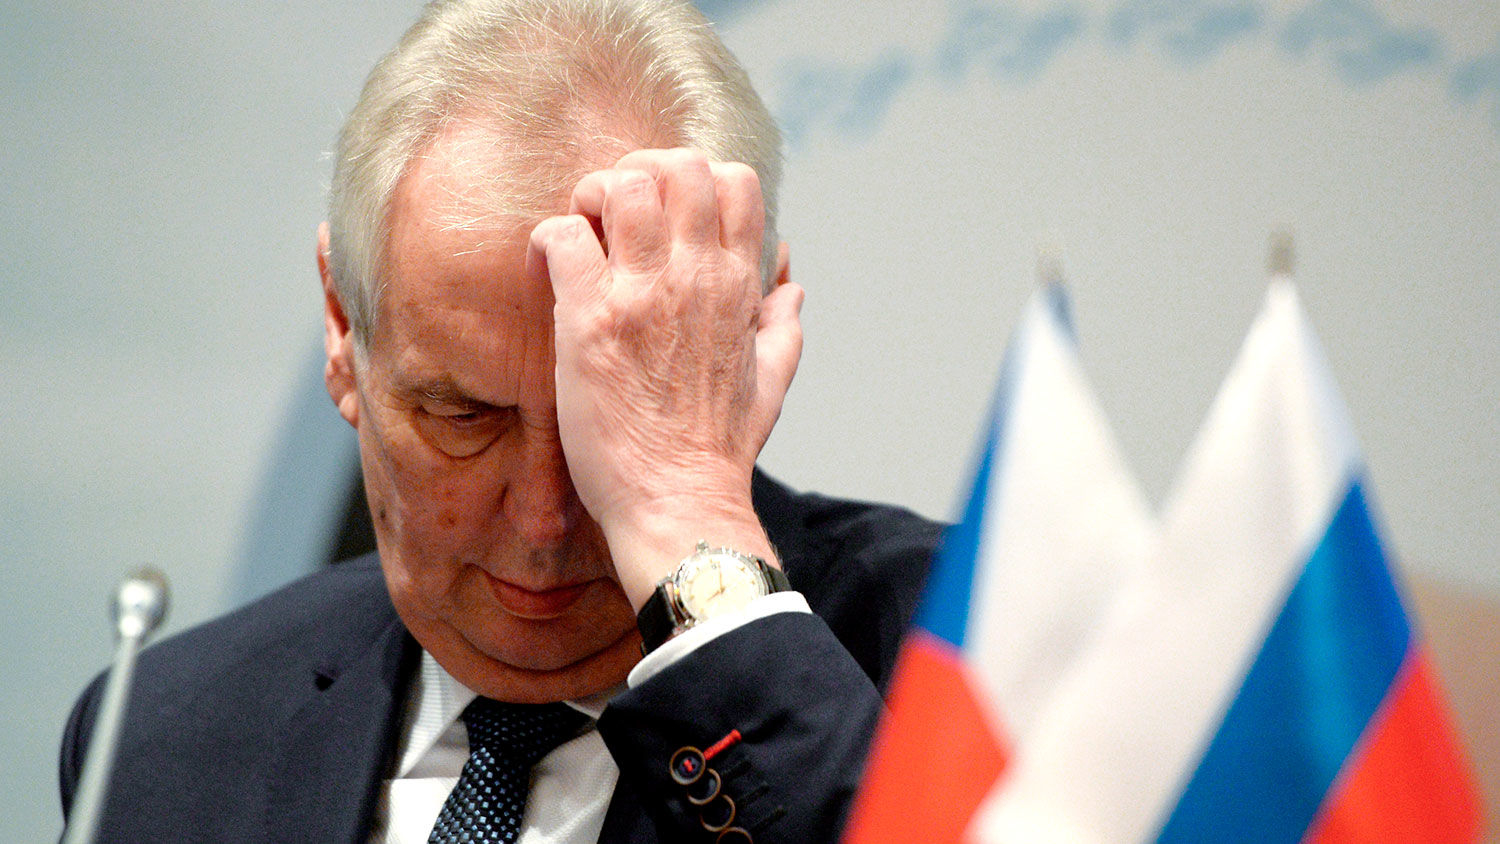 Чехия "недружественная" для России: Земан ответил Кремлю